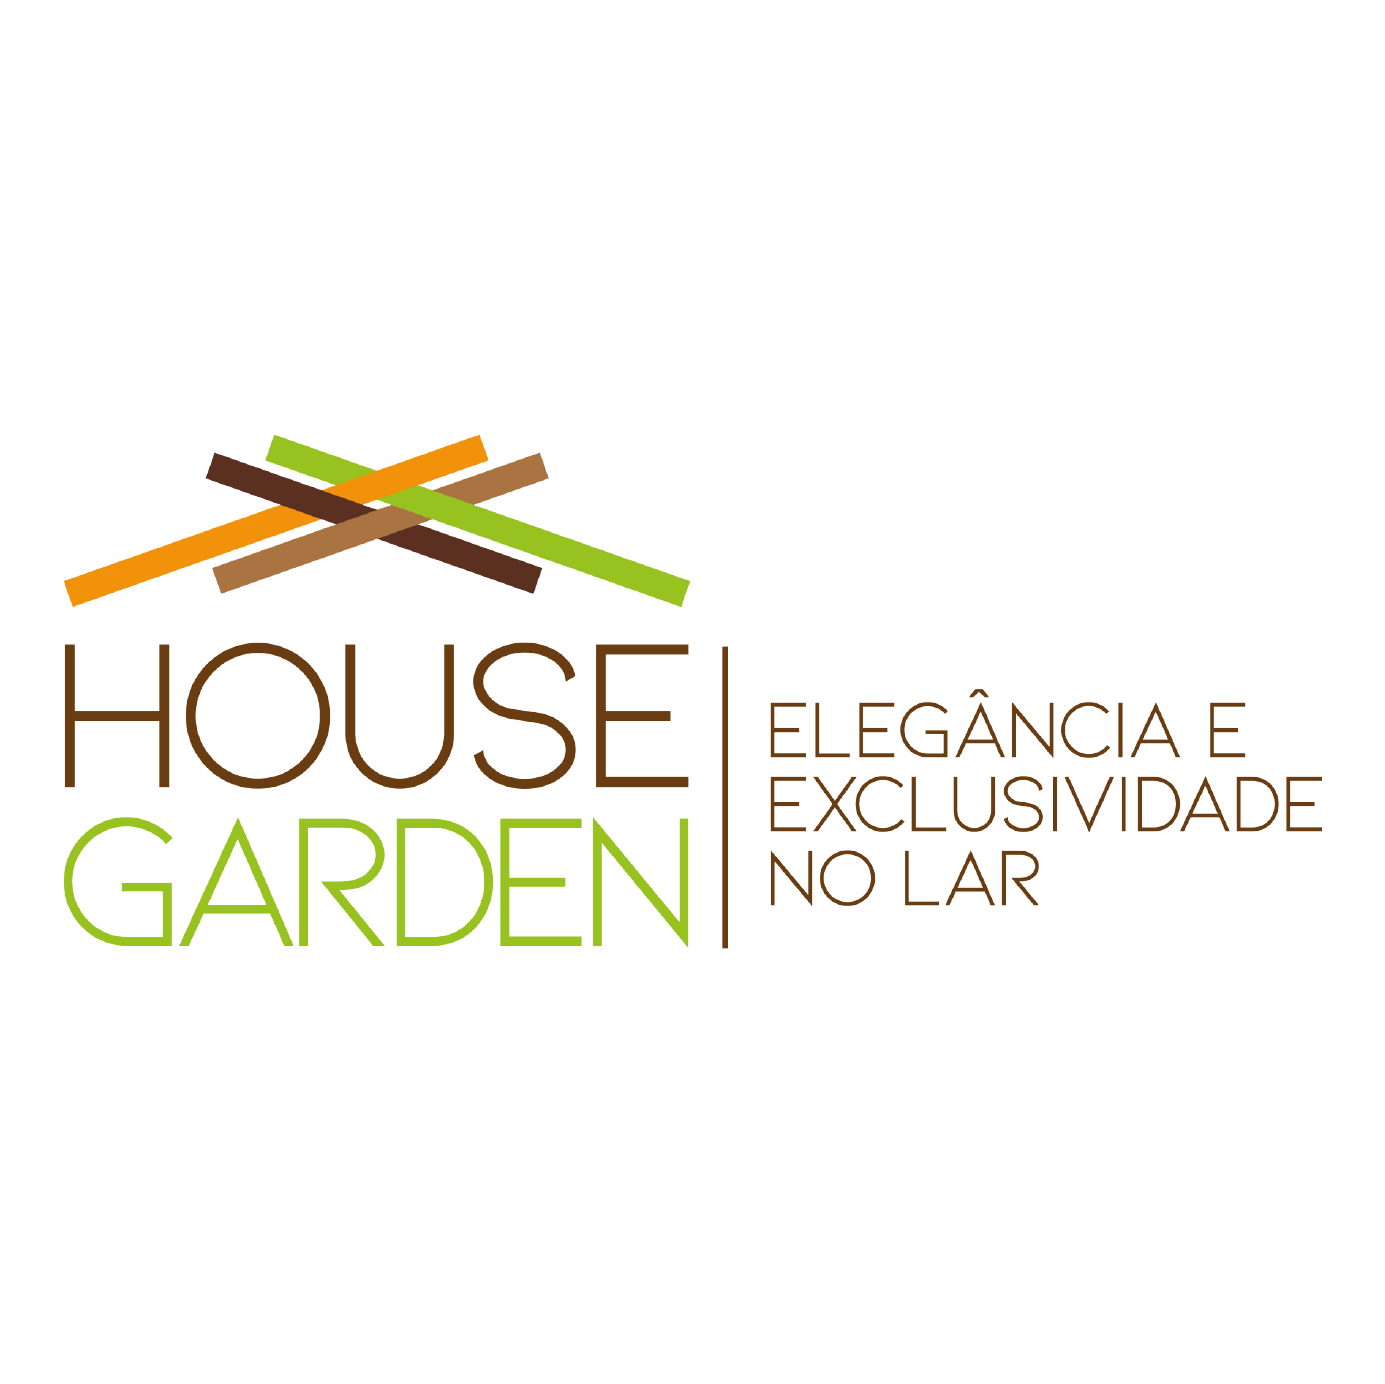 House Garden